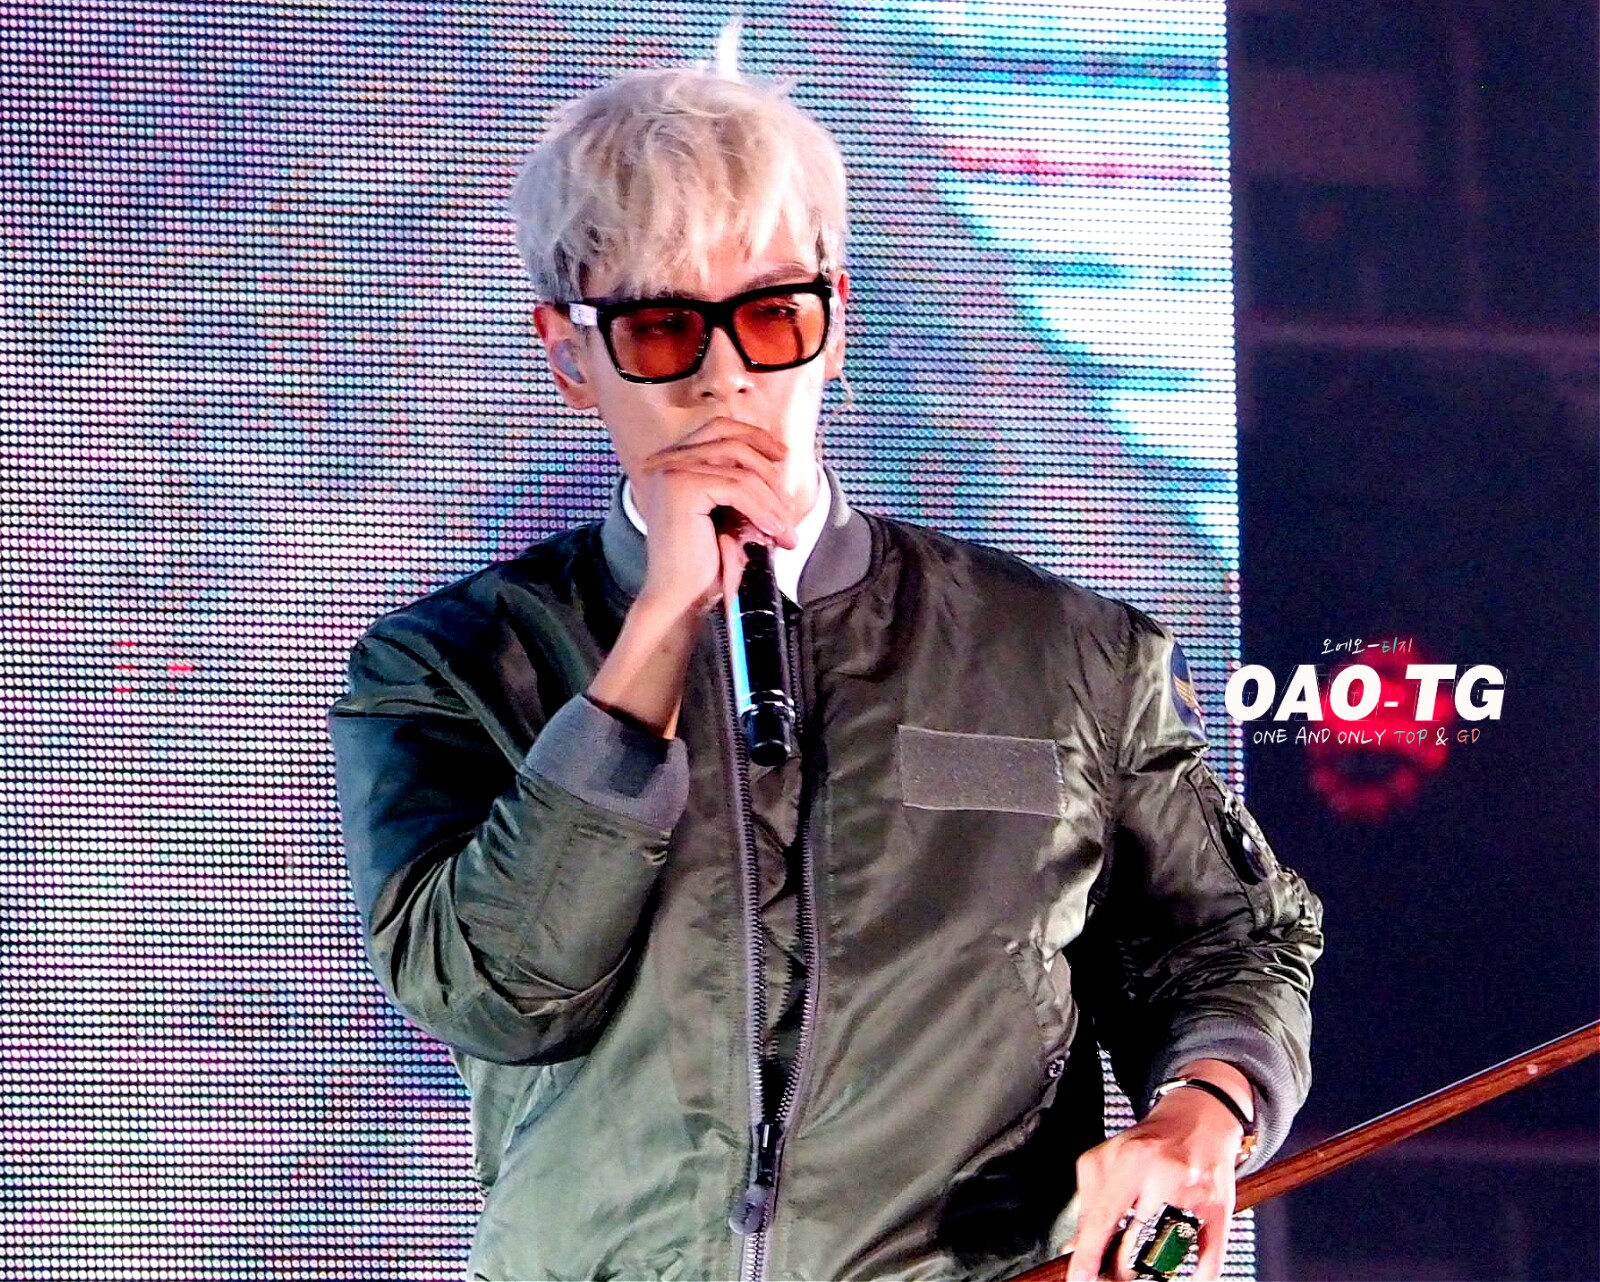 BIGBANG - Made Tour 2015 - Changsha - 28aug2015 - OAO-TG - 02.jpg